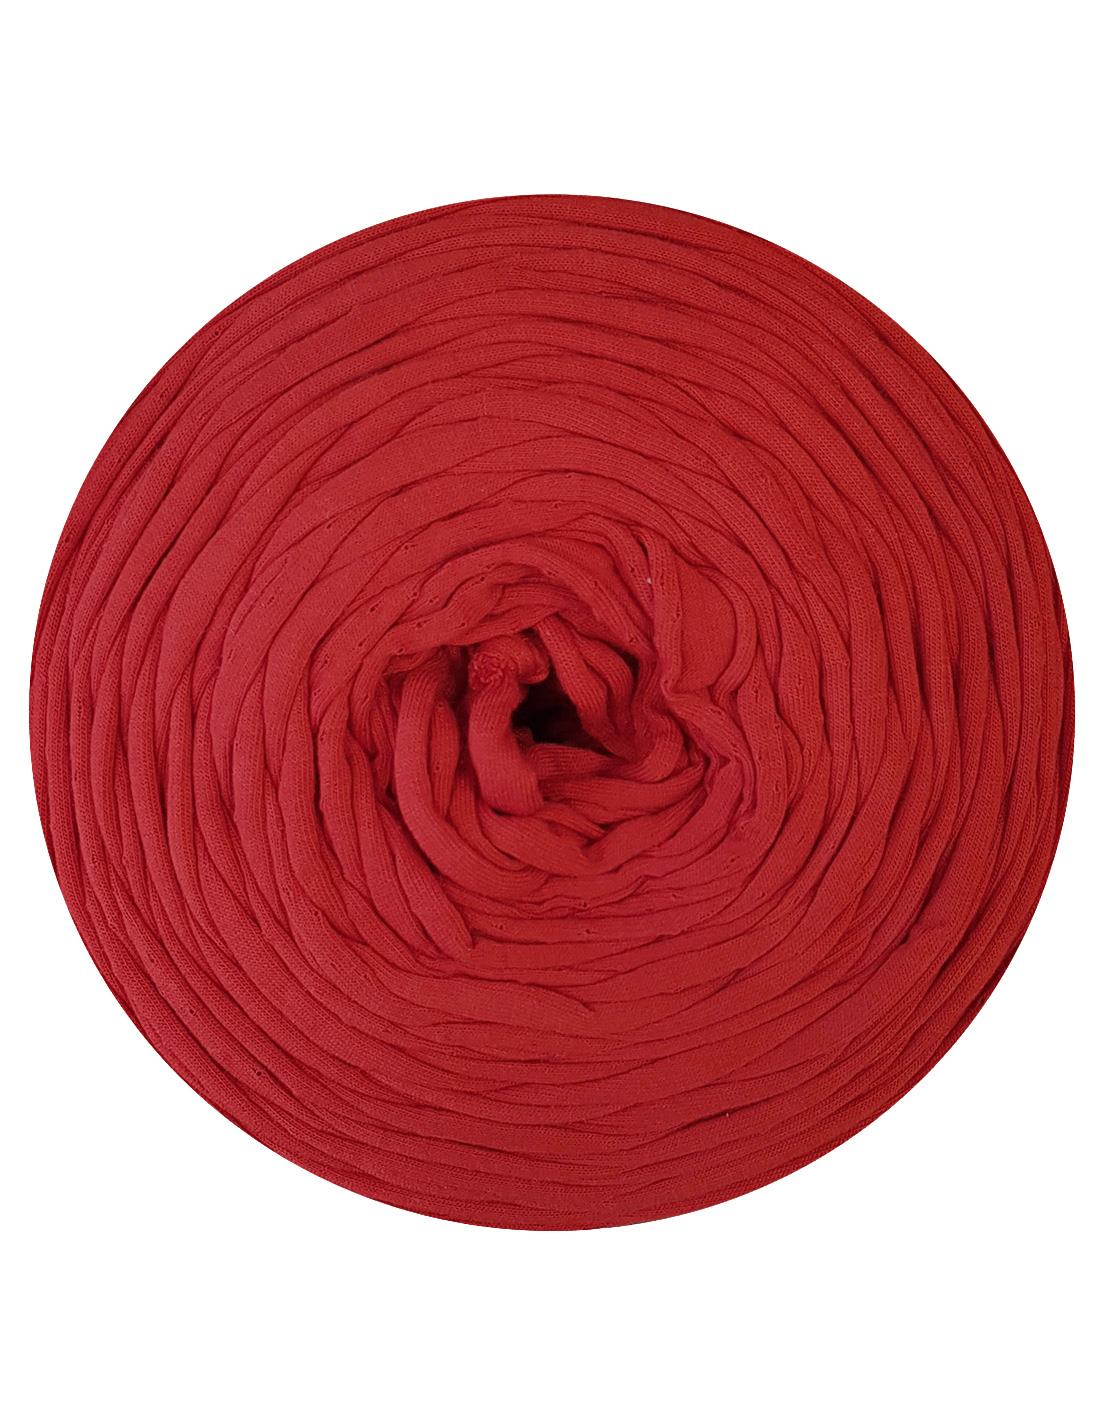 Warm red t-shirt yarn by Rescue Yarn (100-120m)